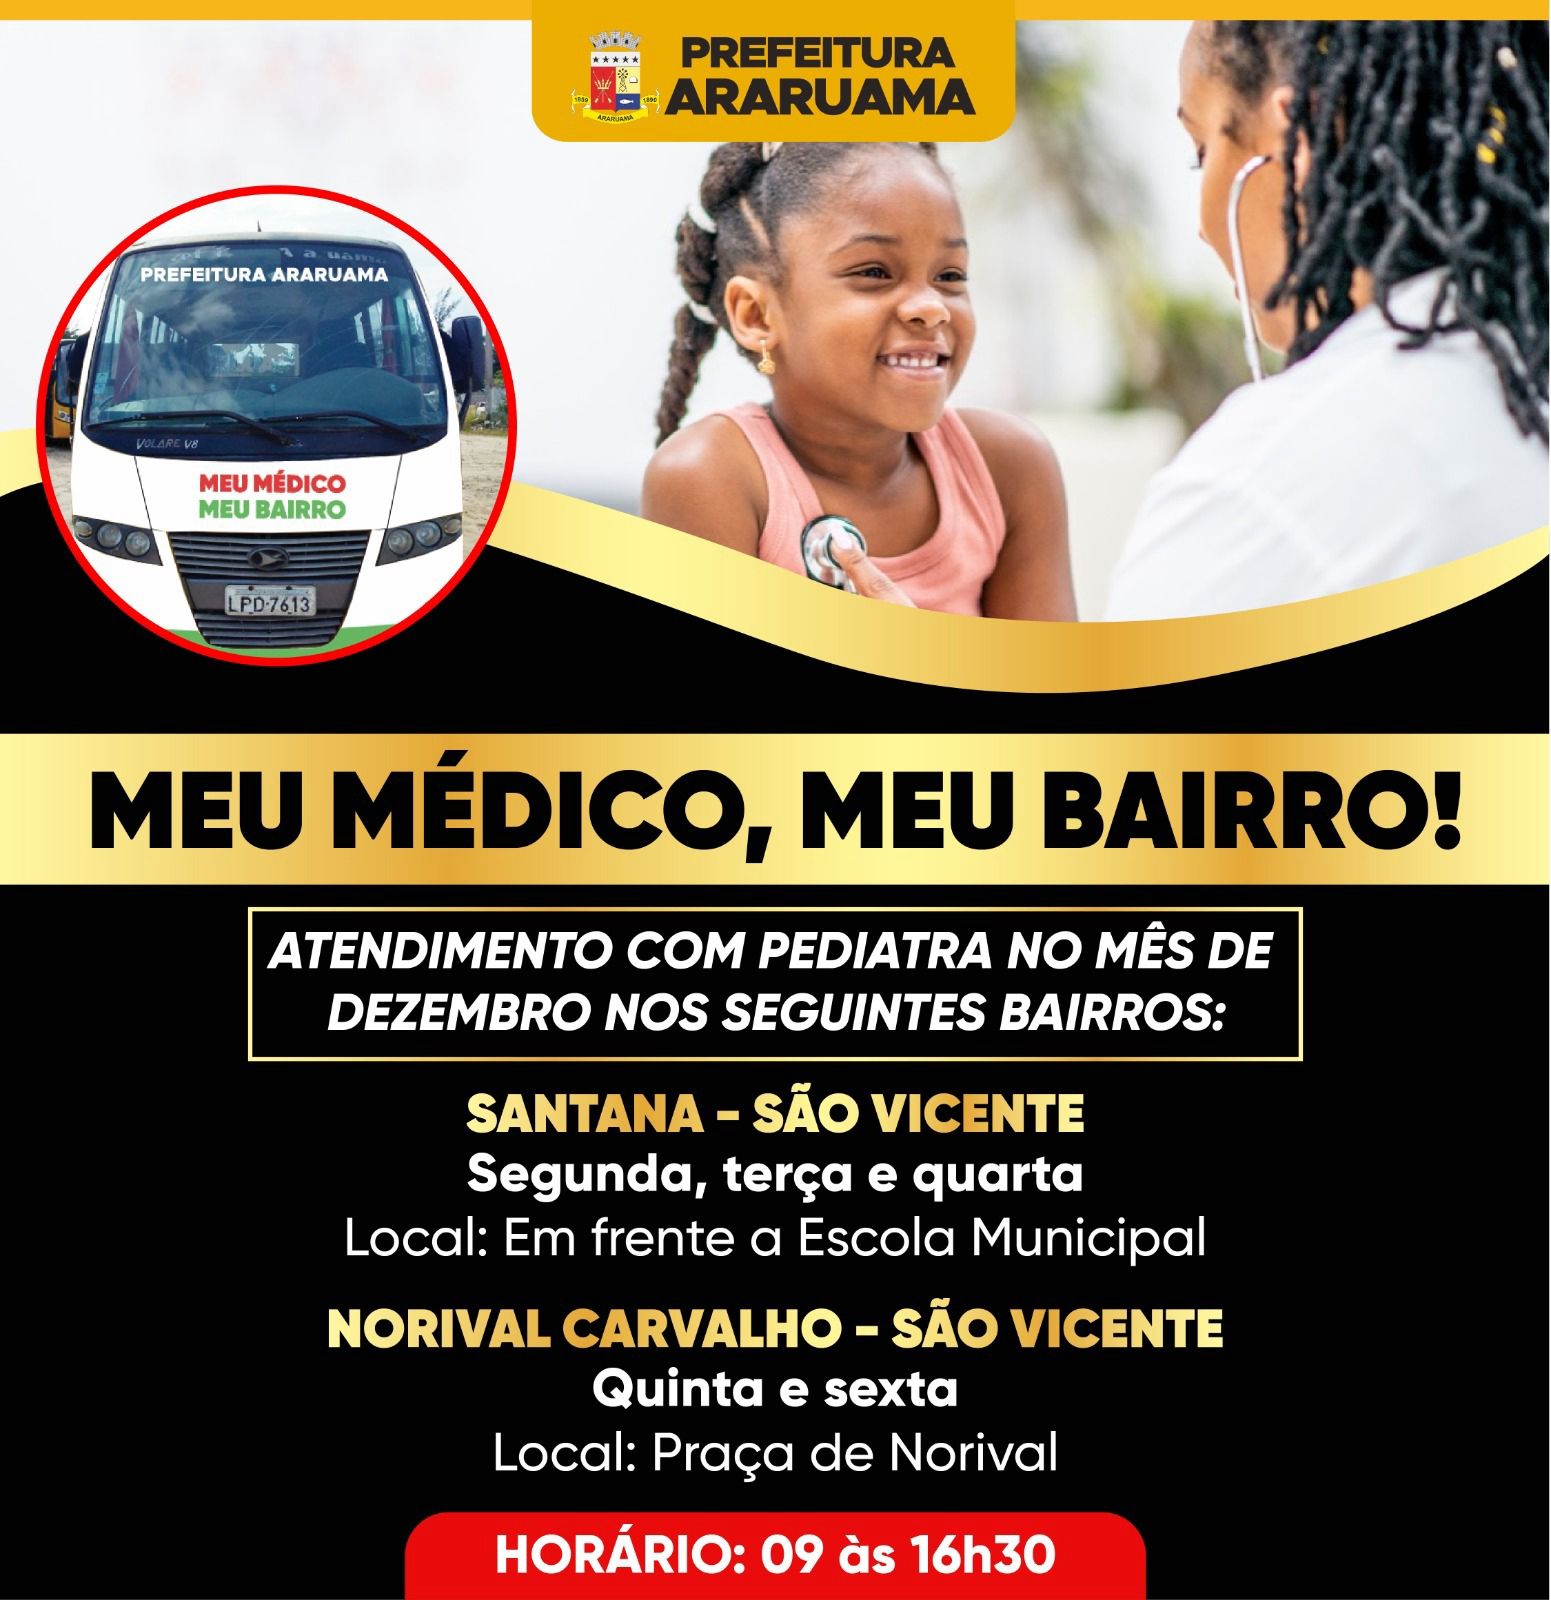 Prefeitura lança o programa “Meu Médico, Meu bairro” com atendimento de pediatria nesse mês de dezembro